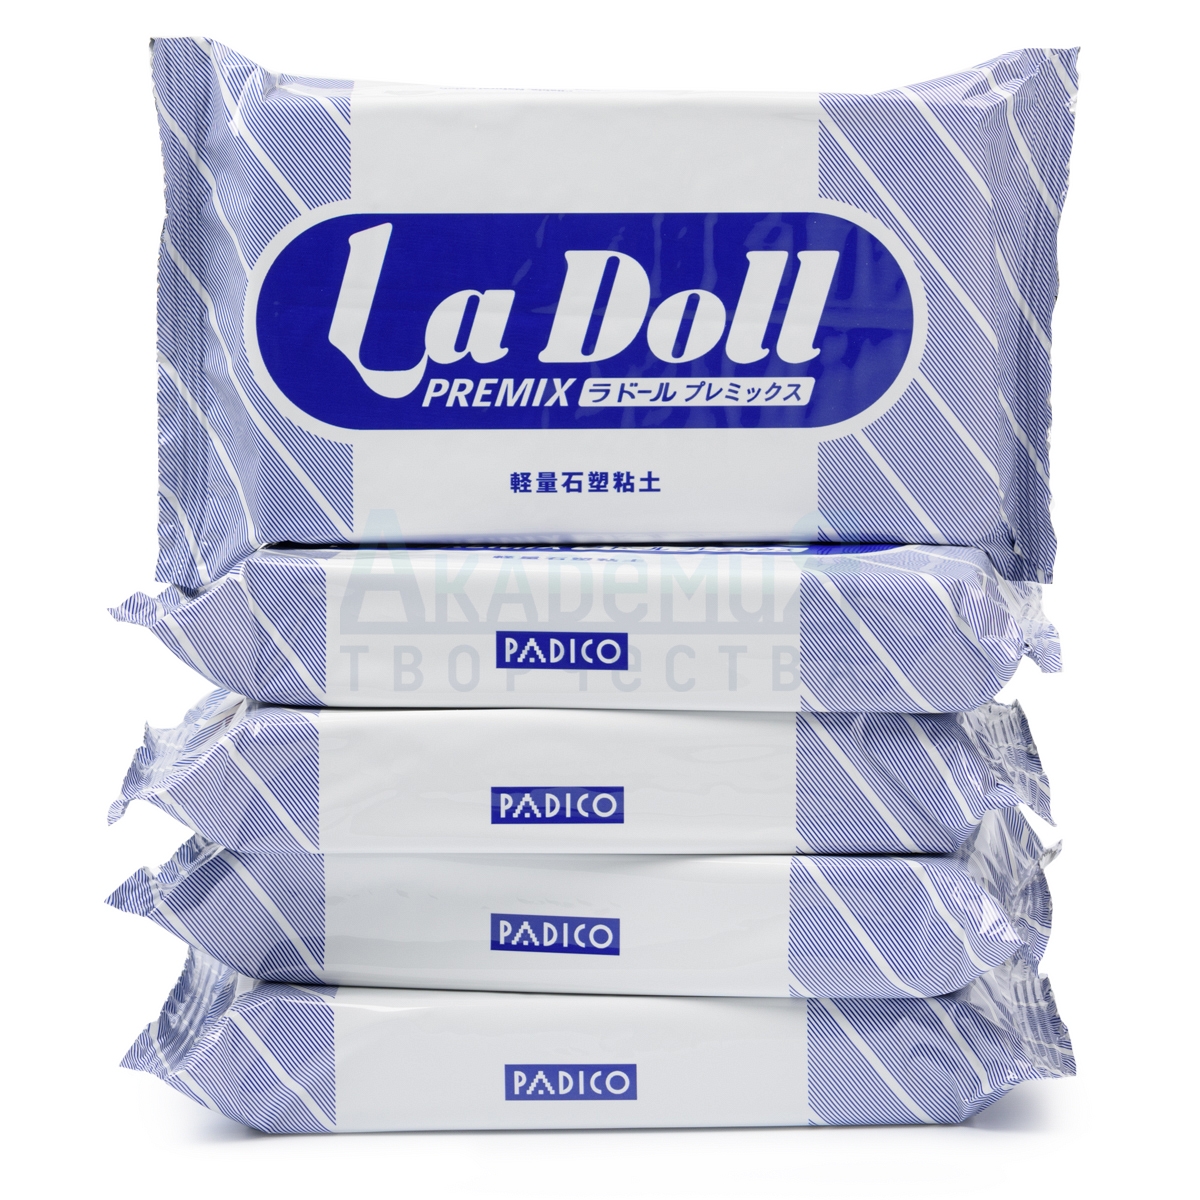 5 упаковок La Doll Premix масса для лепки по 400 гр.